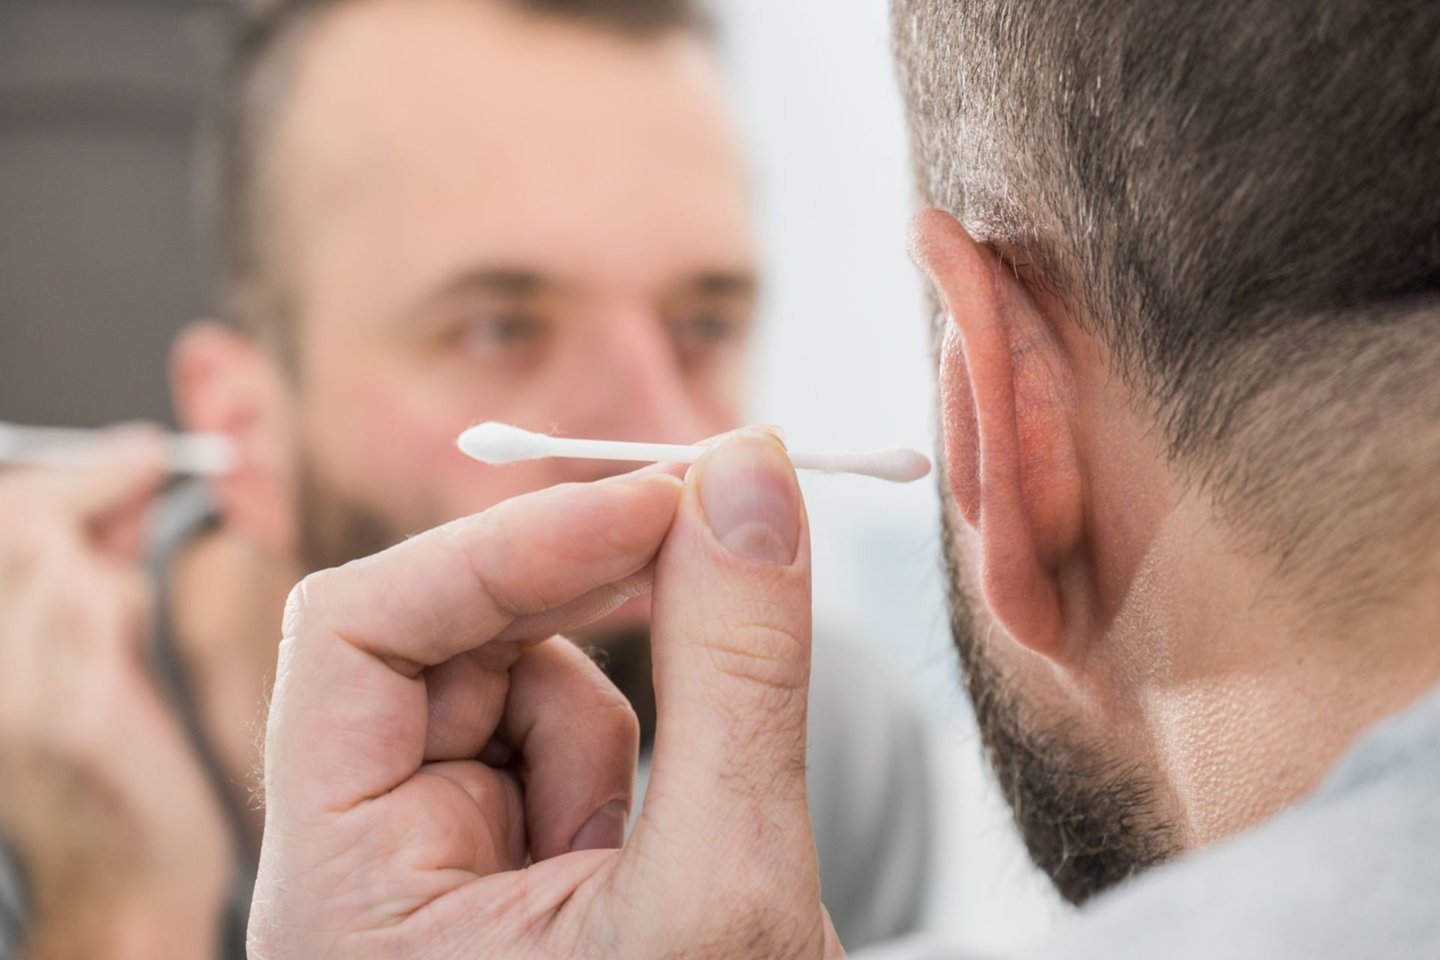   Vyro suprastėjusios sveikatos priežastis buvo ausies infekcija, išsivysčiusi dėl į ją įstrigusio ausų krapštuko dalies.<br> 123rf nuotr.